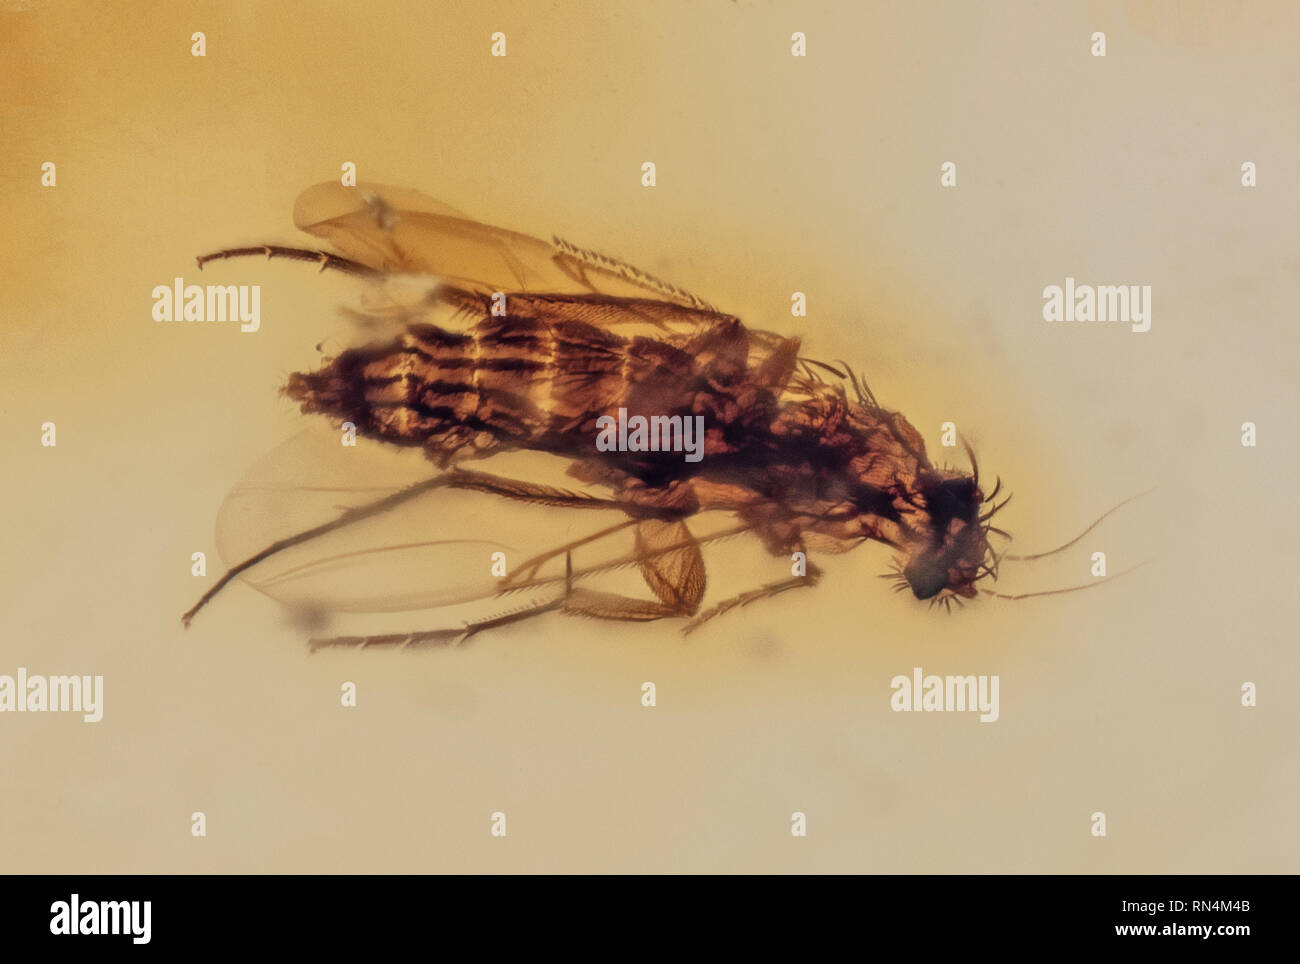 Scuttle Fly in Amber, Colombian, Pliocene, 10 MYO Stock Photo